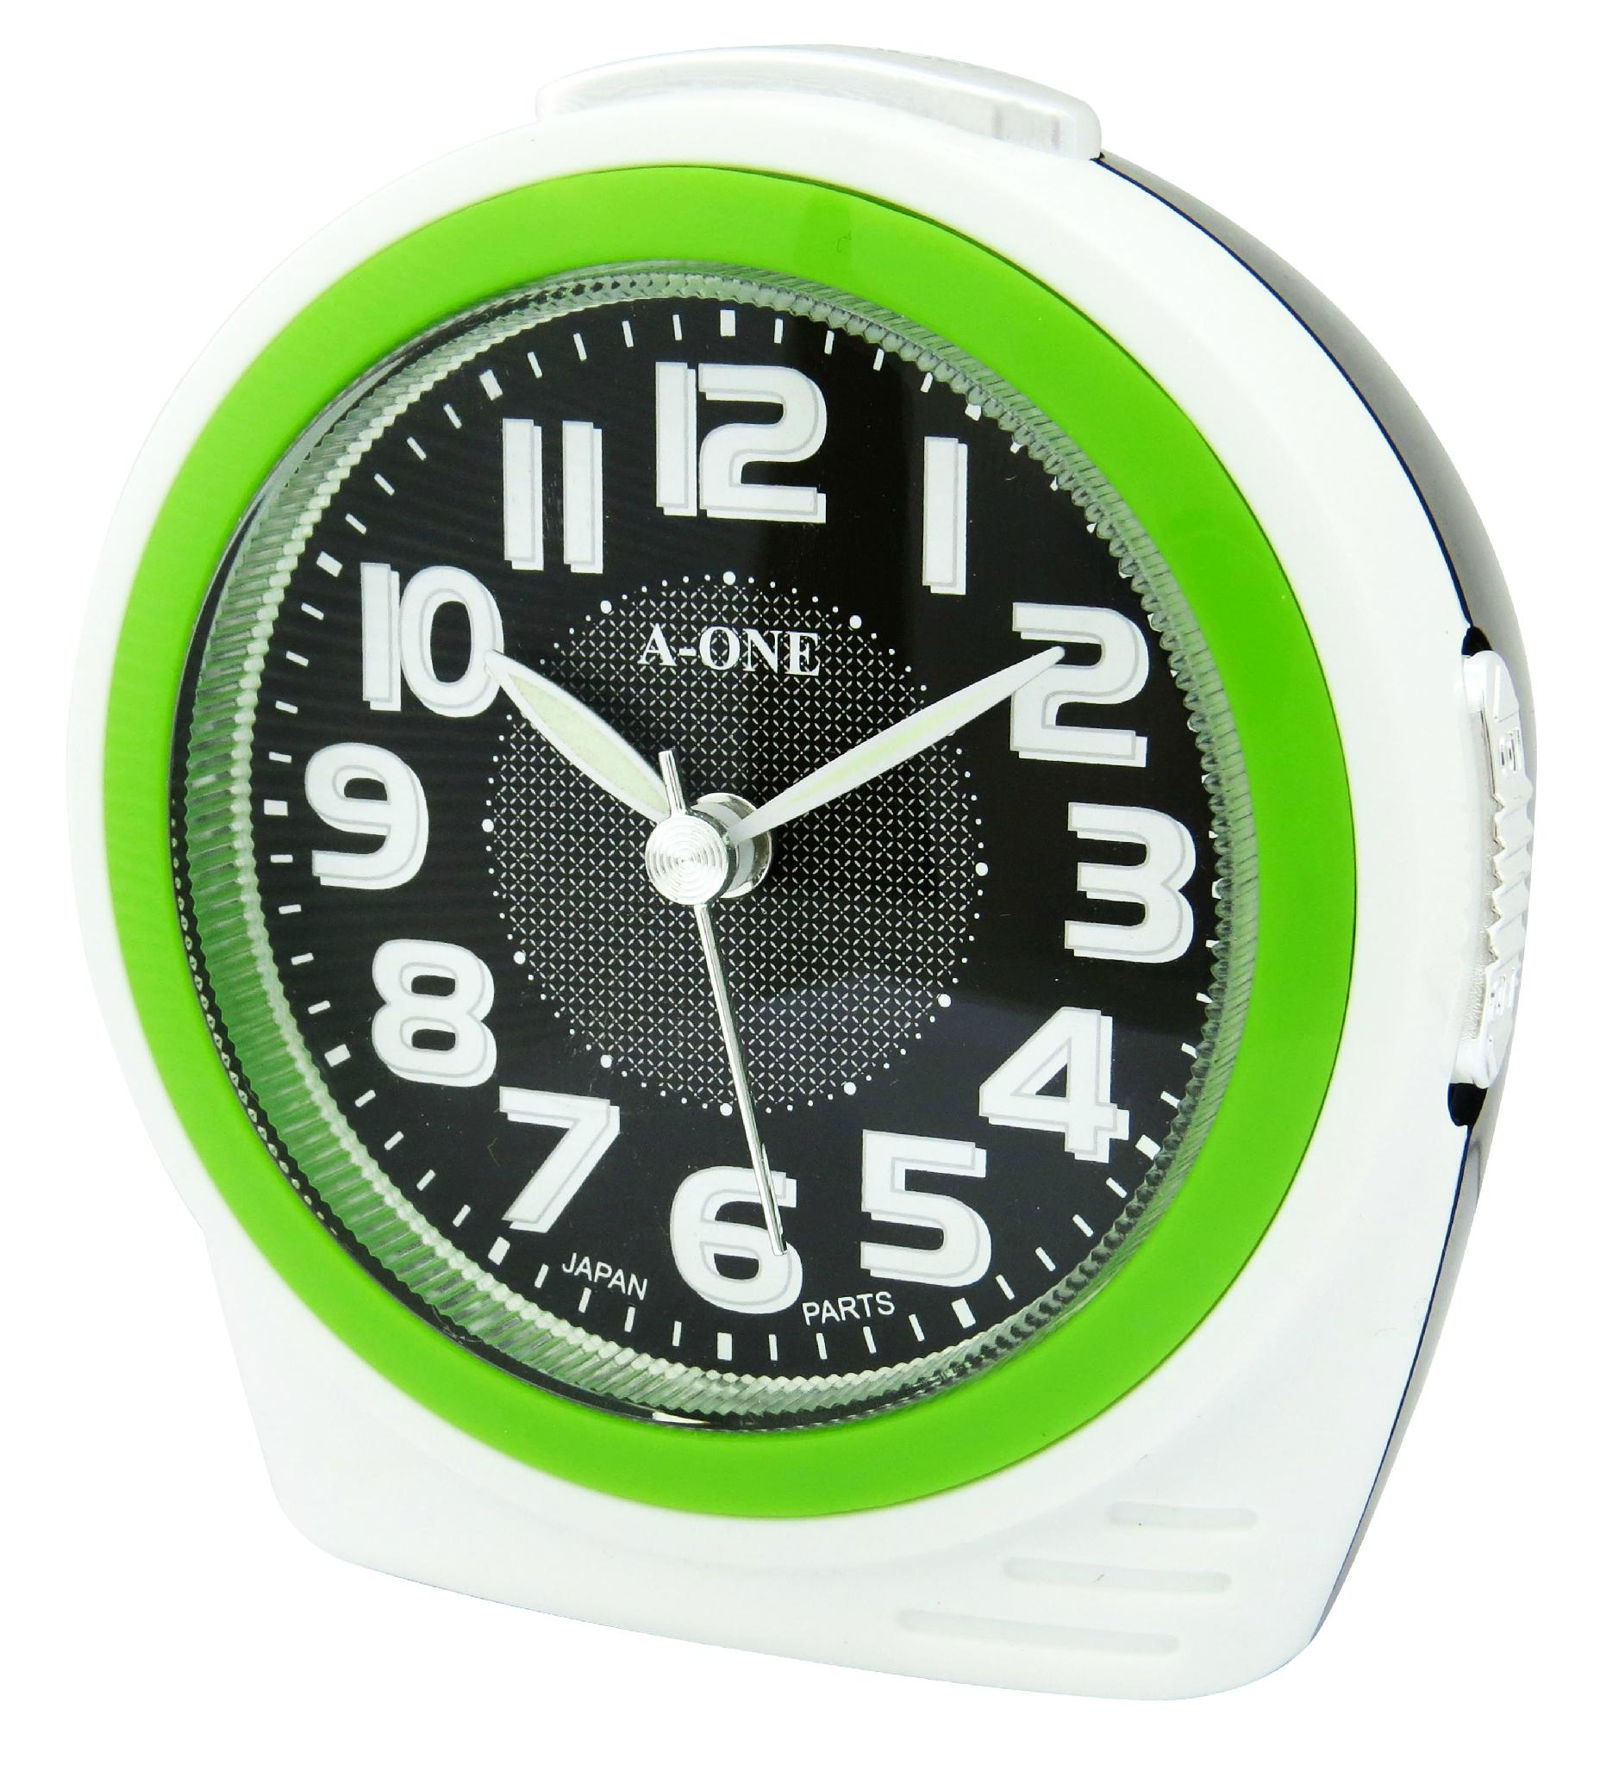 TG-0164 Colorful Bibi Ring Alarm Clock 3